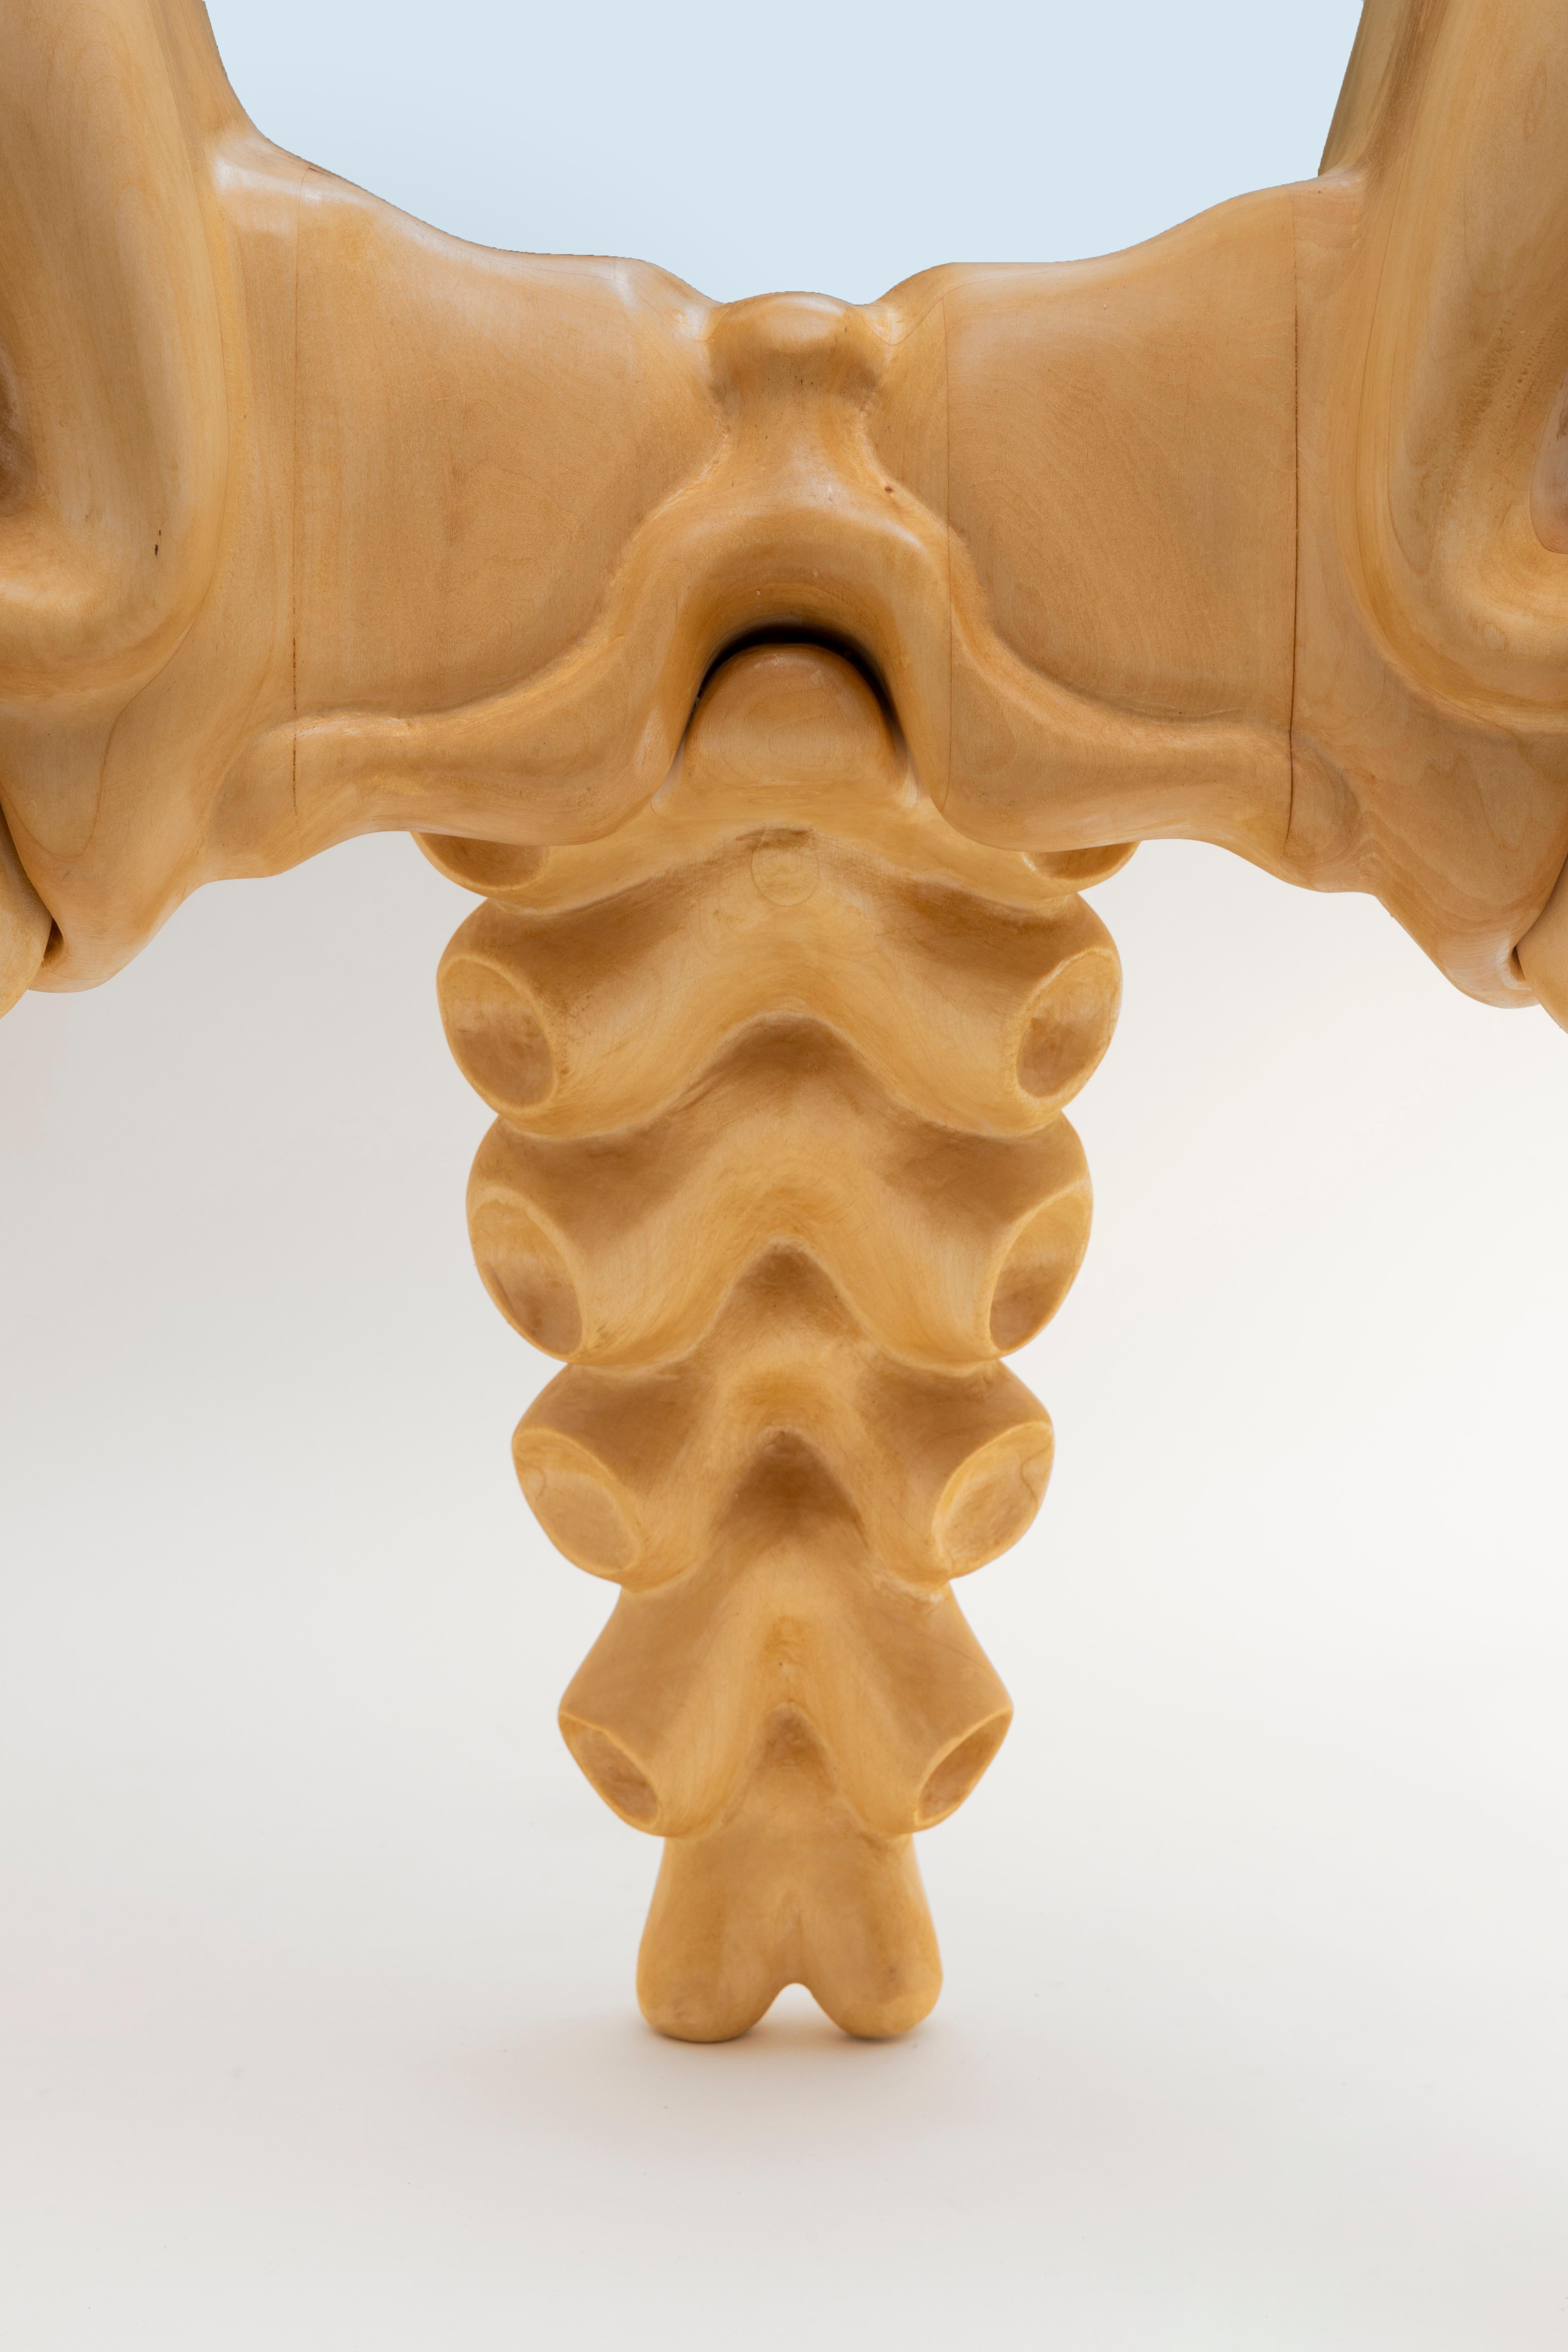 Carved Wood Sculptural Floor Mirror by Ryan Decker 1